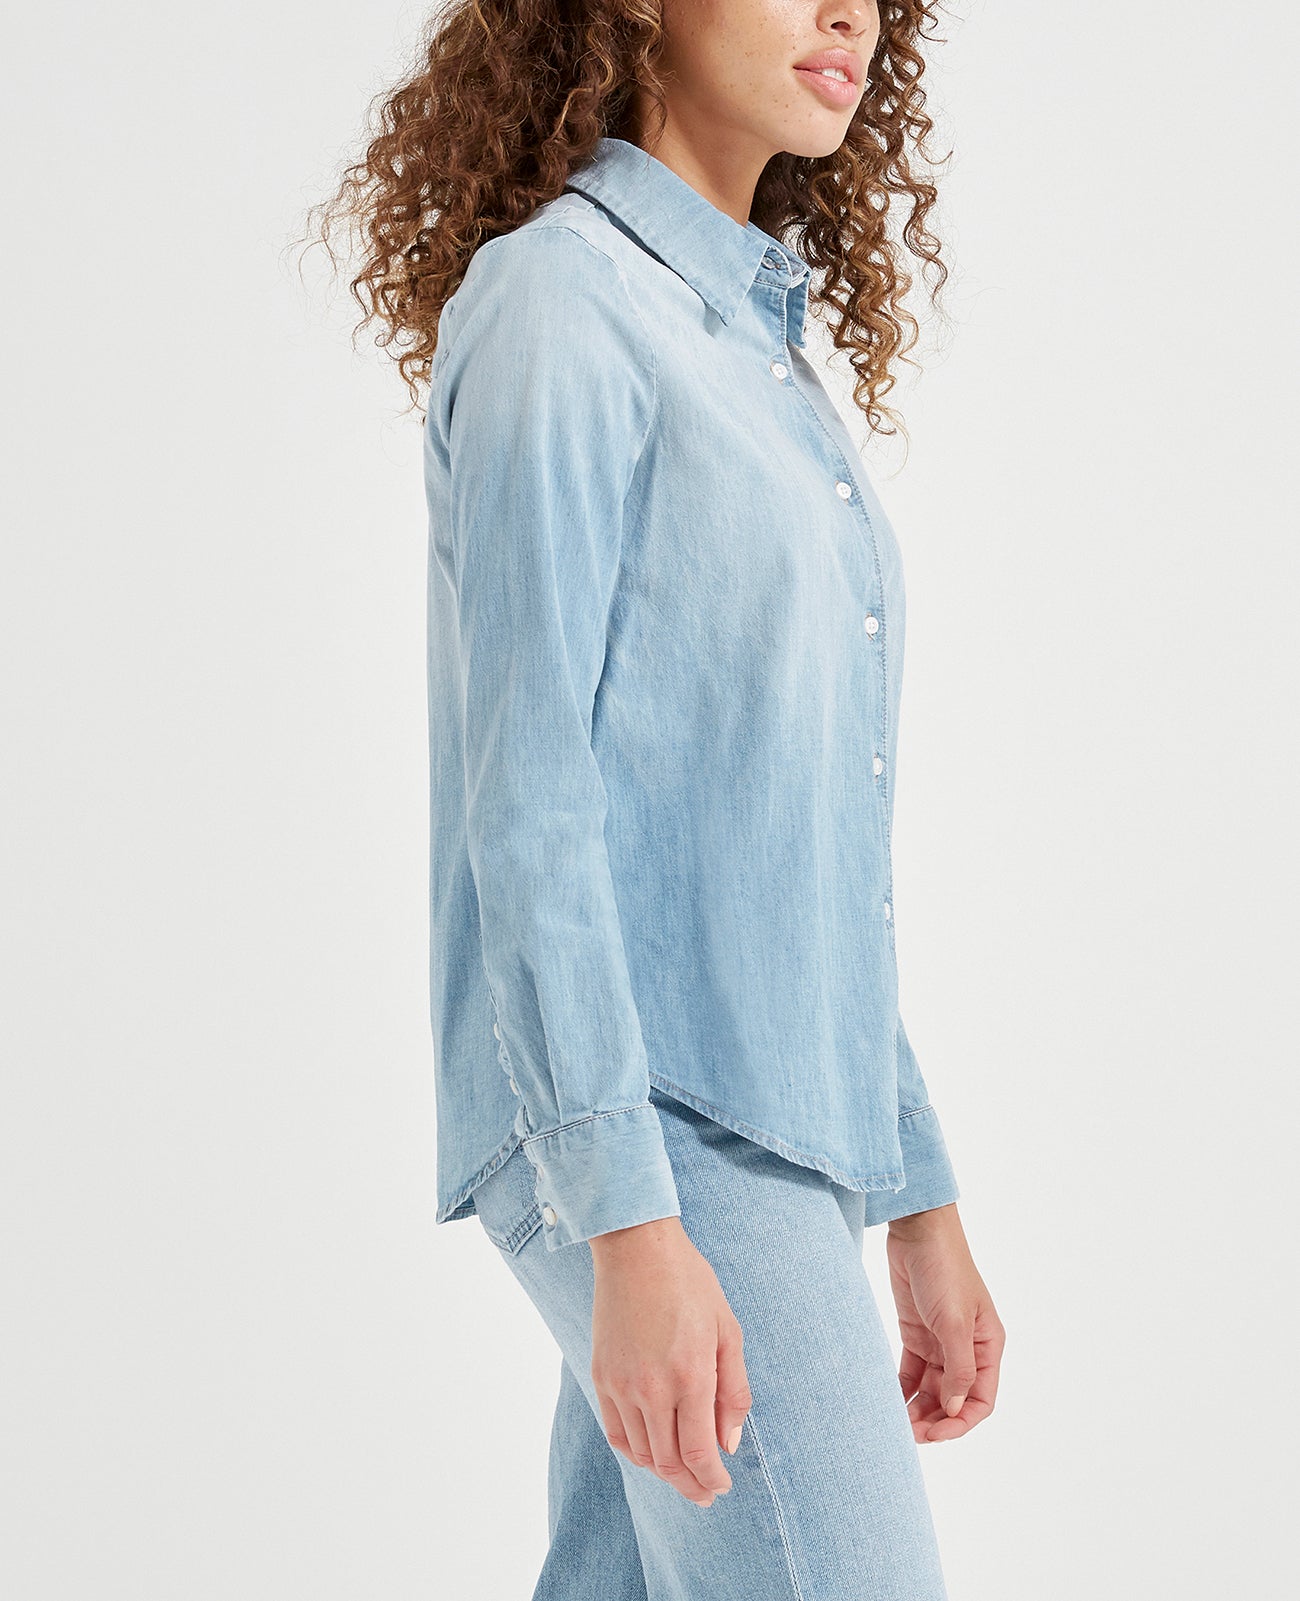 Cade Shirt Azure Light Classic Button Up Shirt Women Tops Photo 2